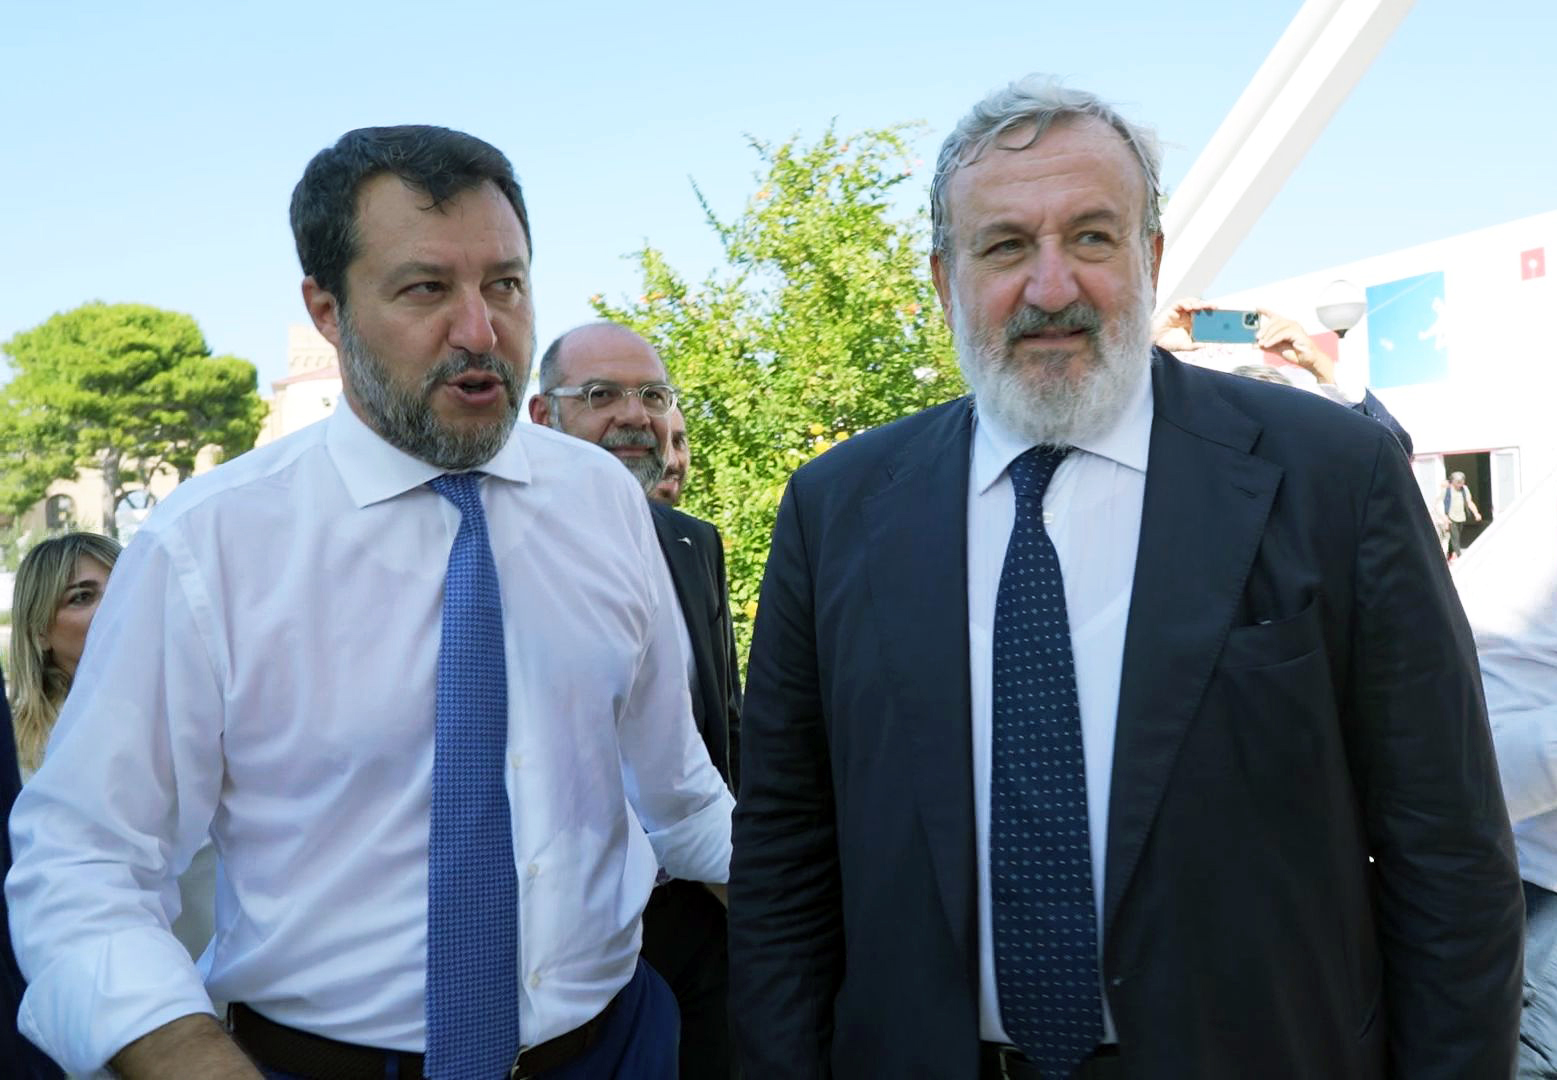 Galleria FdL 2023. Il ministro Salvini visita il padiglione della Regione Puglia. Con il presidente Emiliano visitano la mostra sui Giochi del Mediterraneo a Taranto - Diapositiva 4 di 7